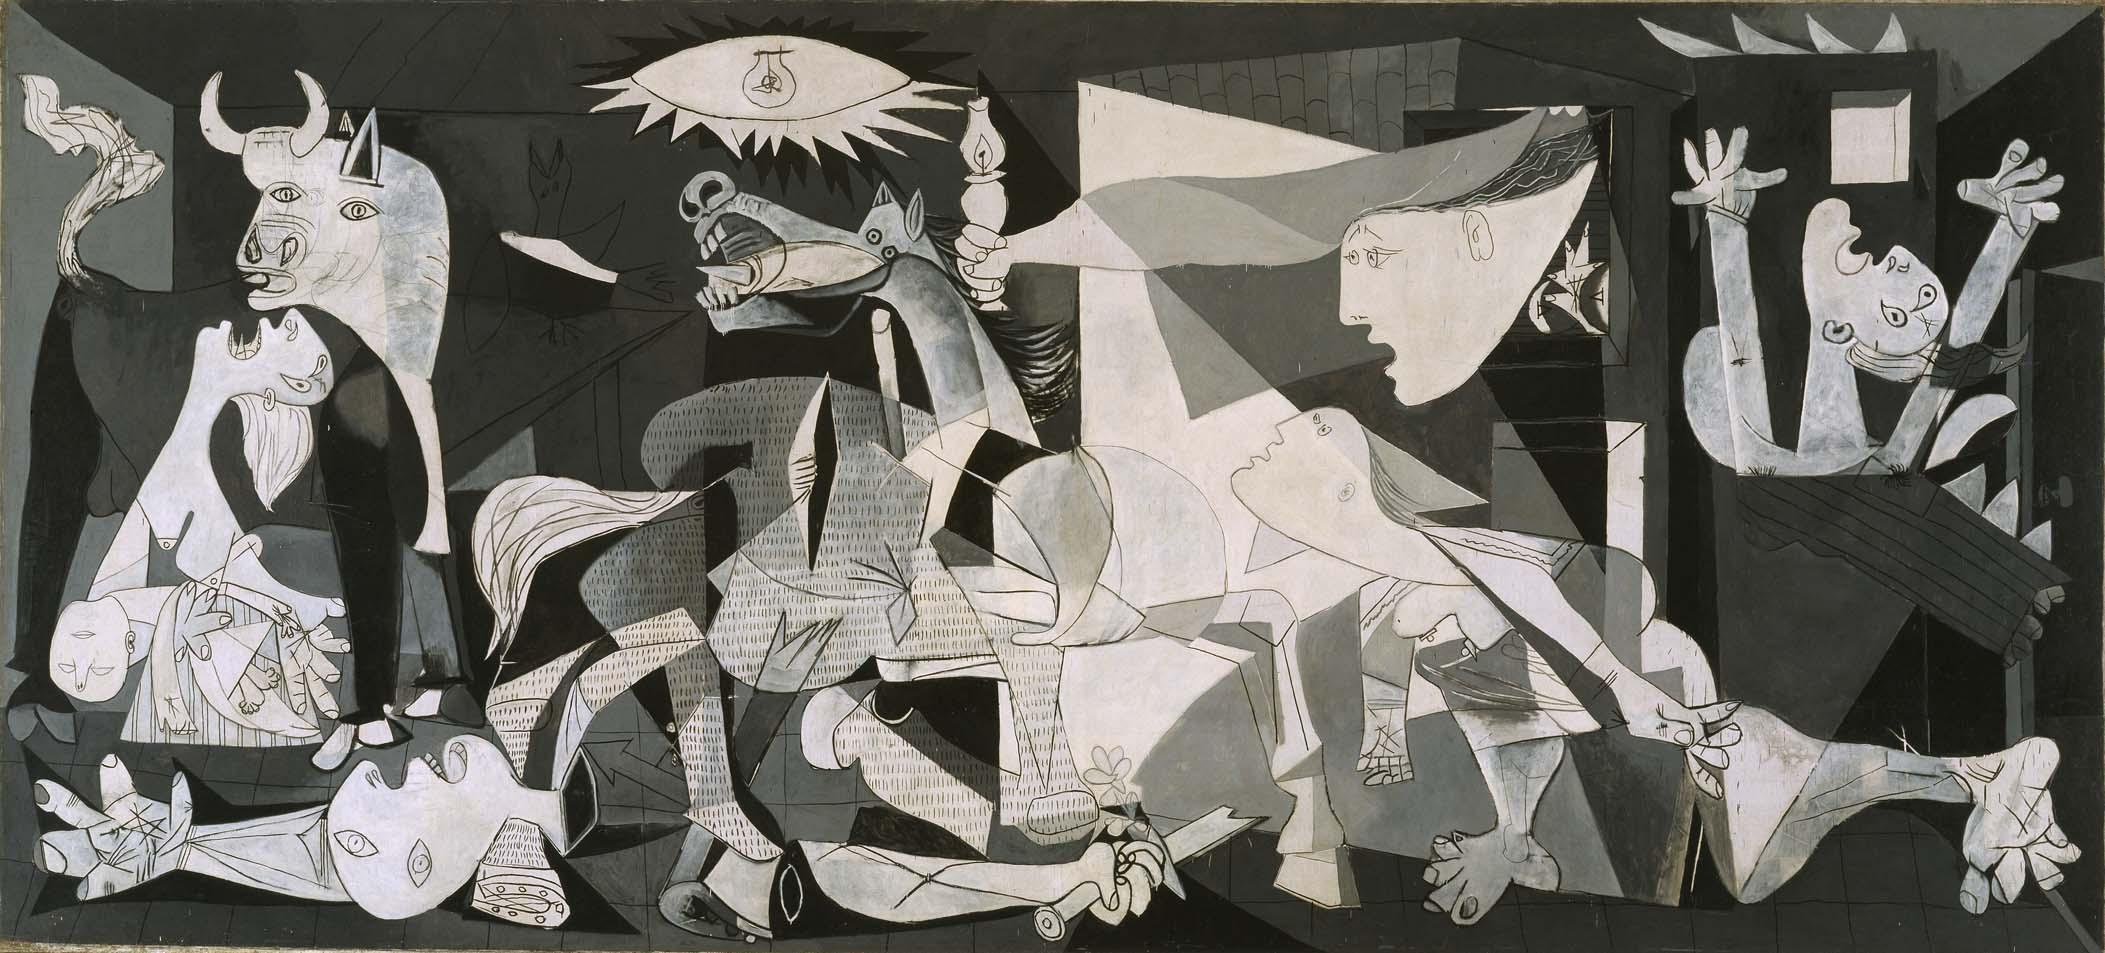 Painel "Guernica" (1937), de Pablo Picasso.